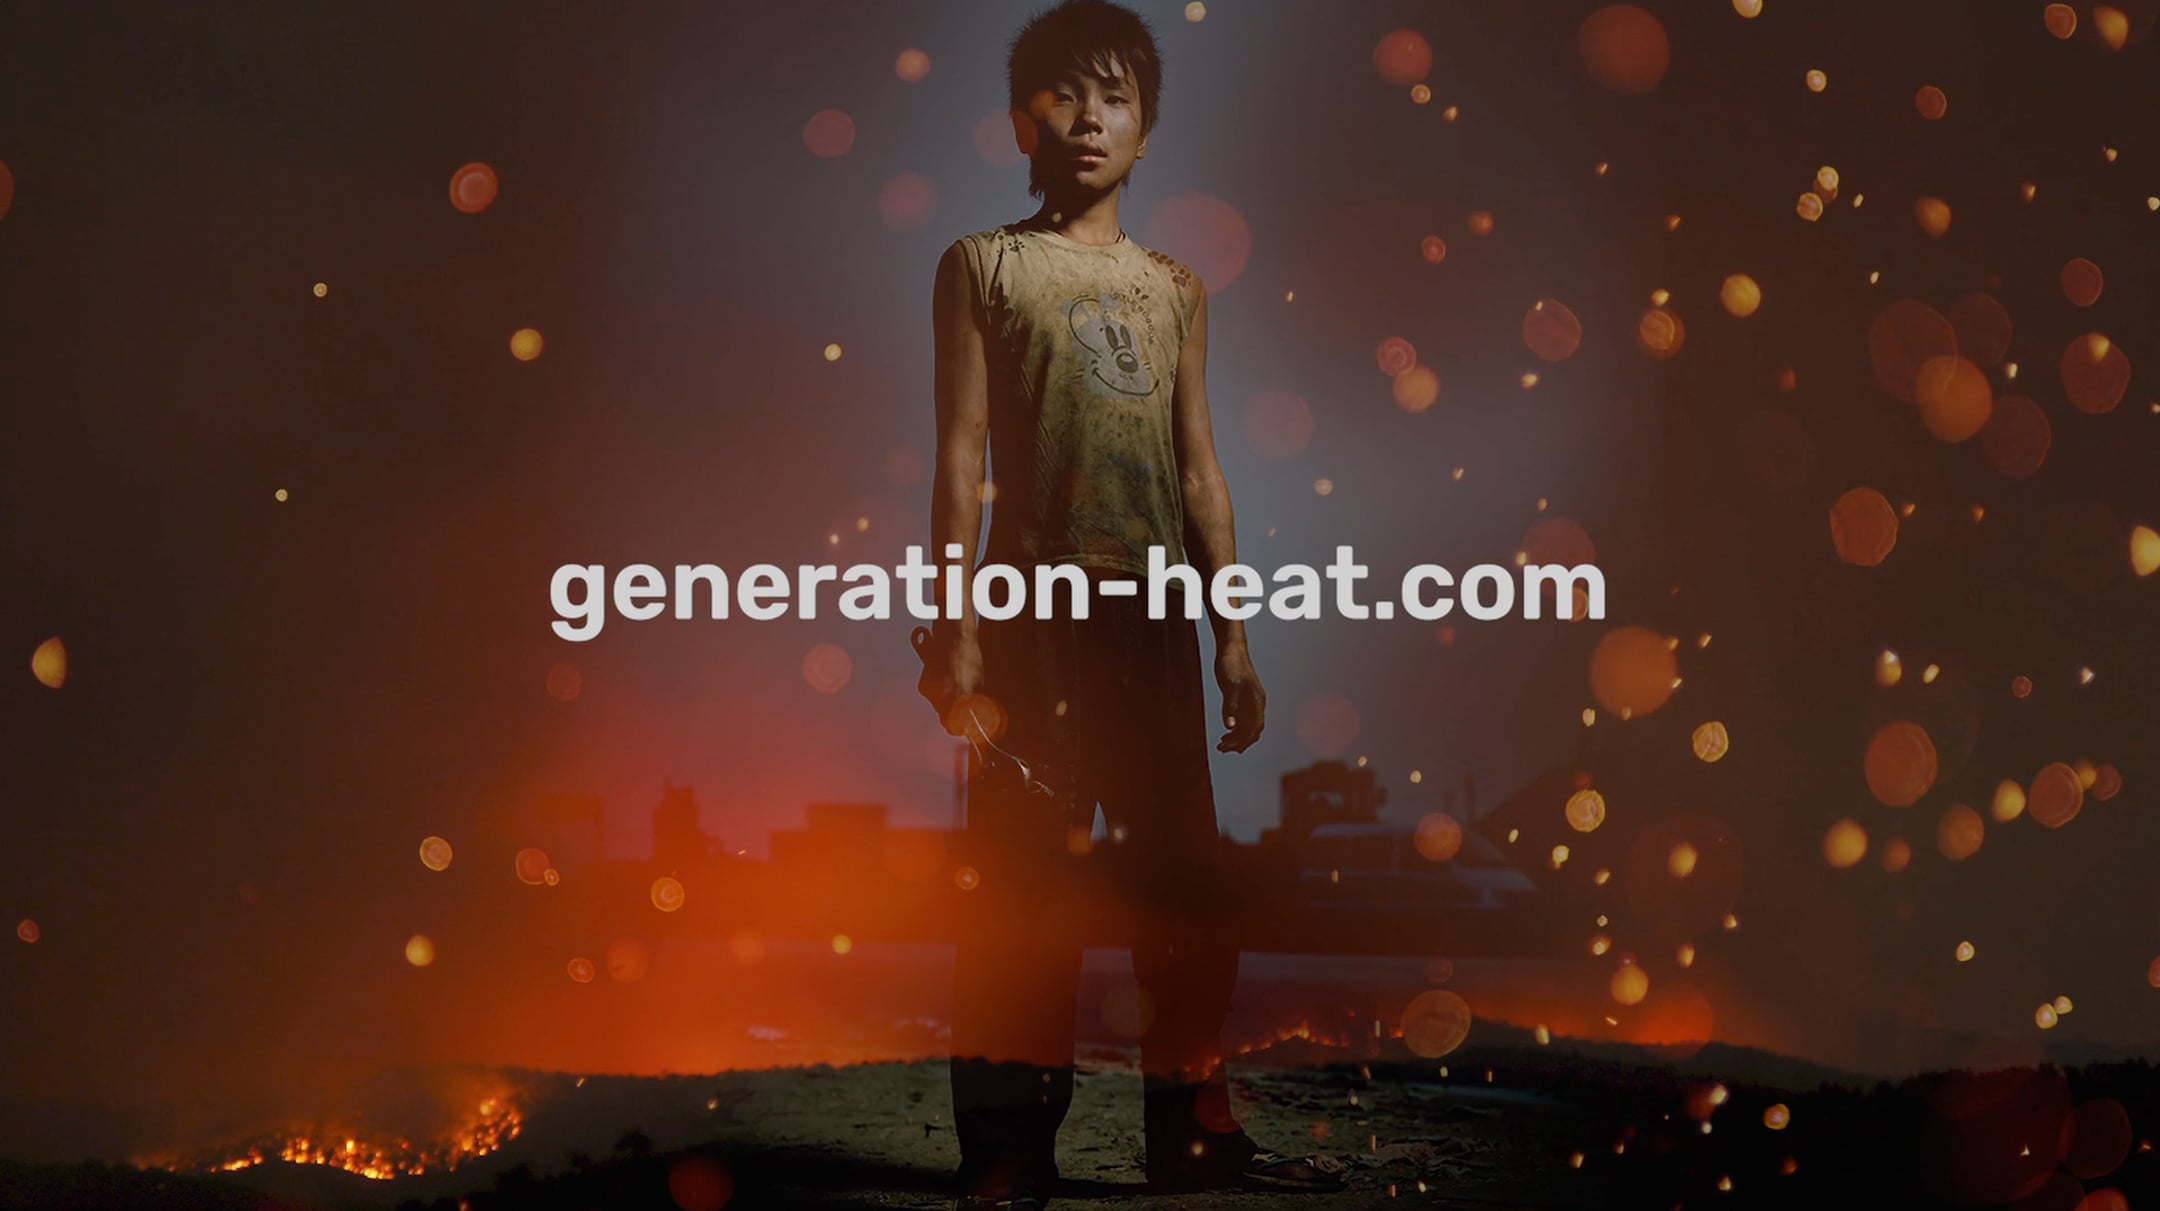 generationHEAT. - Eine Stimme für die nächste Generation